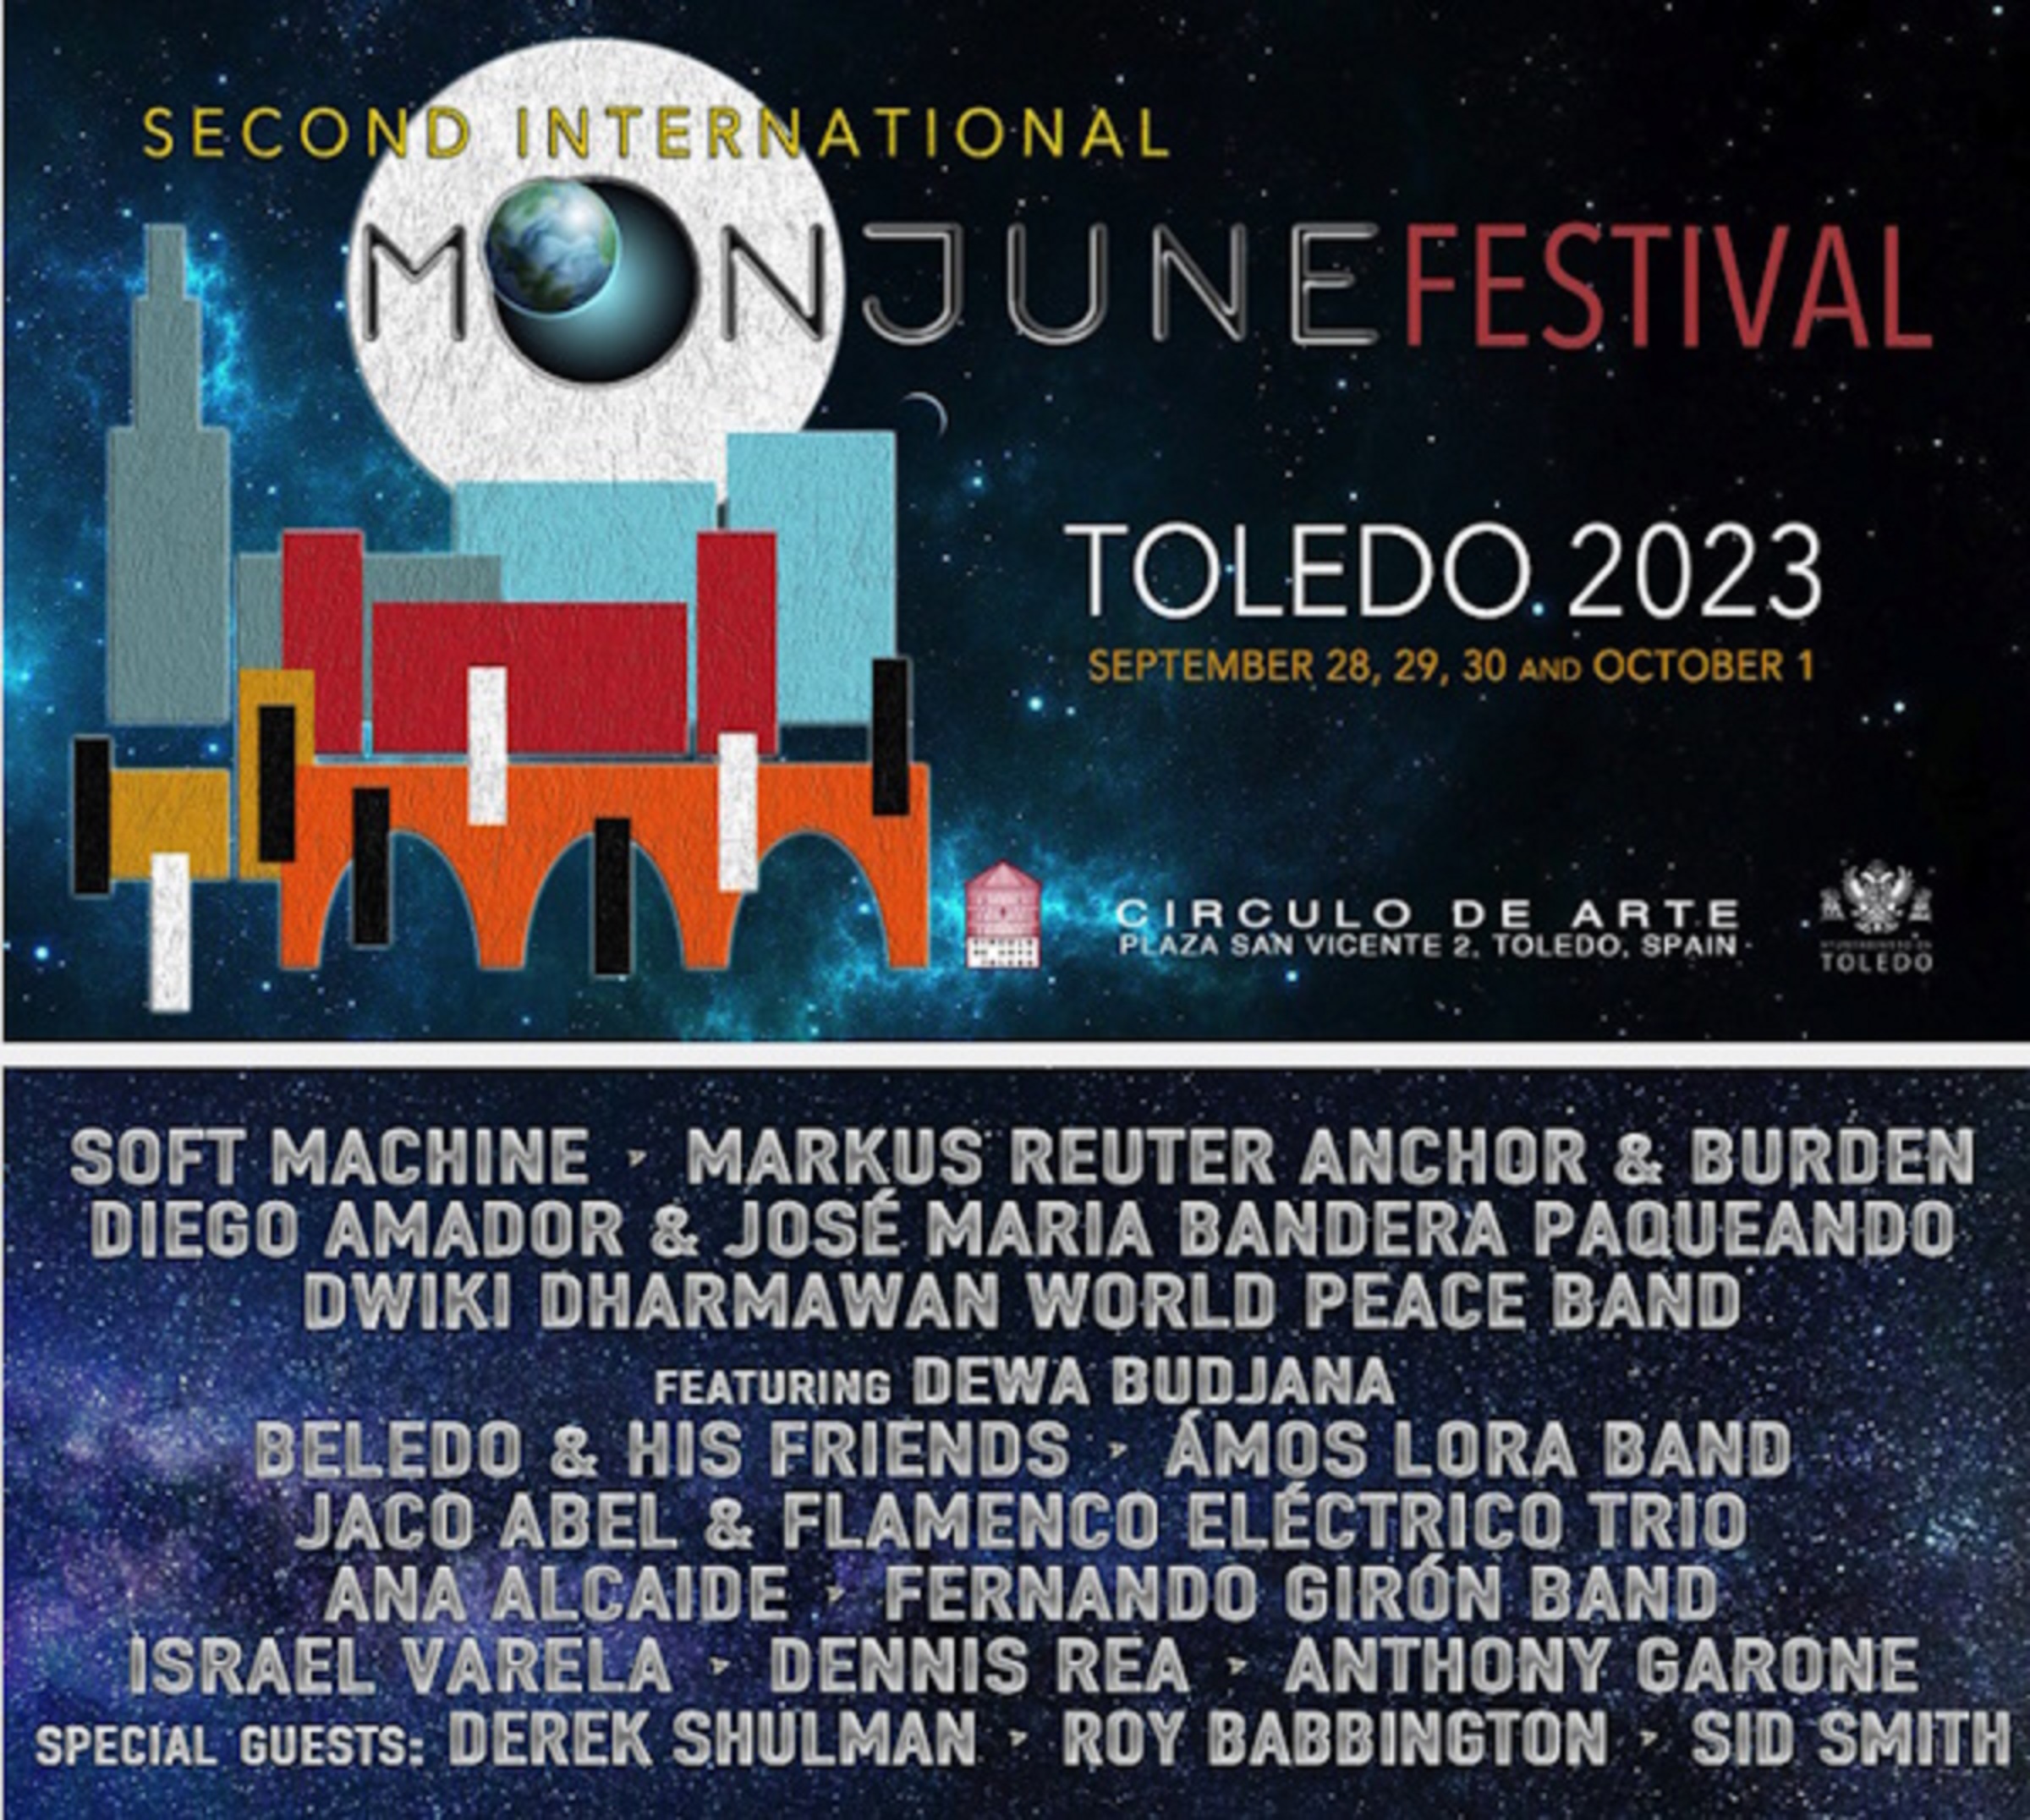 MoonJune Music Festival Toledo 2023